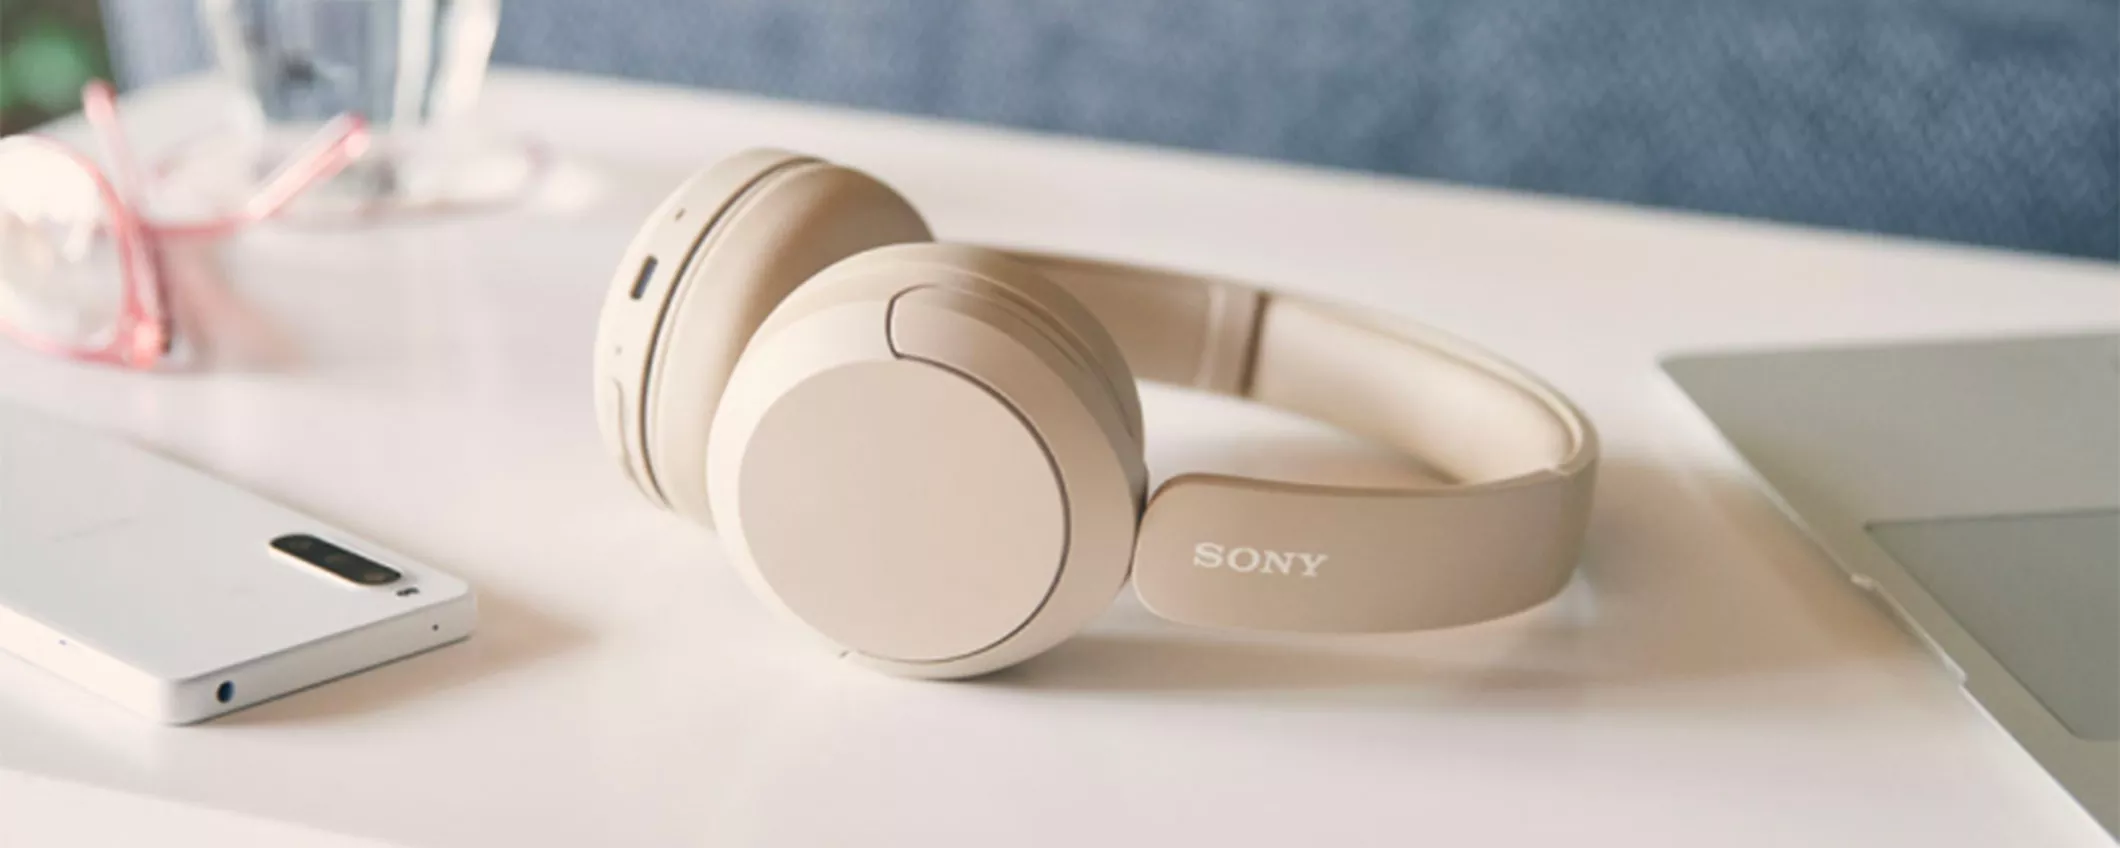 Eleva la tua esperienza d'audio con le splendide cuffie wireless Sony in SUPER SCONTO